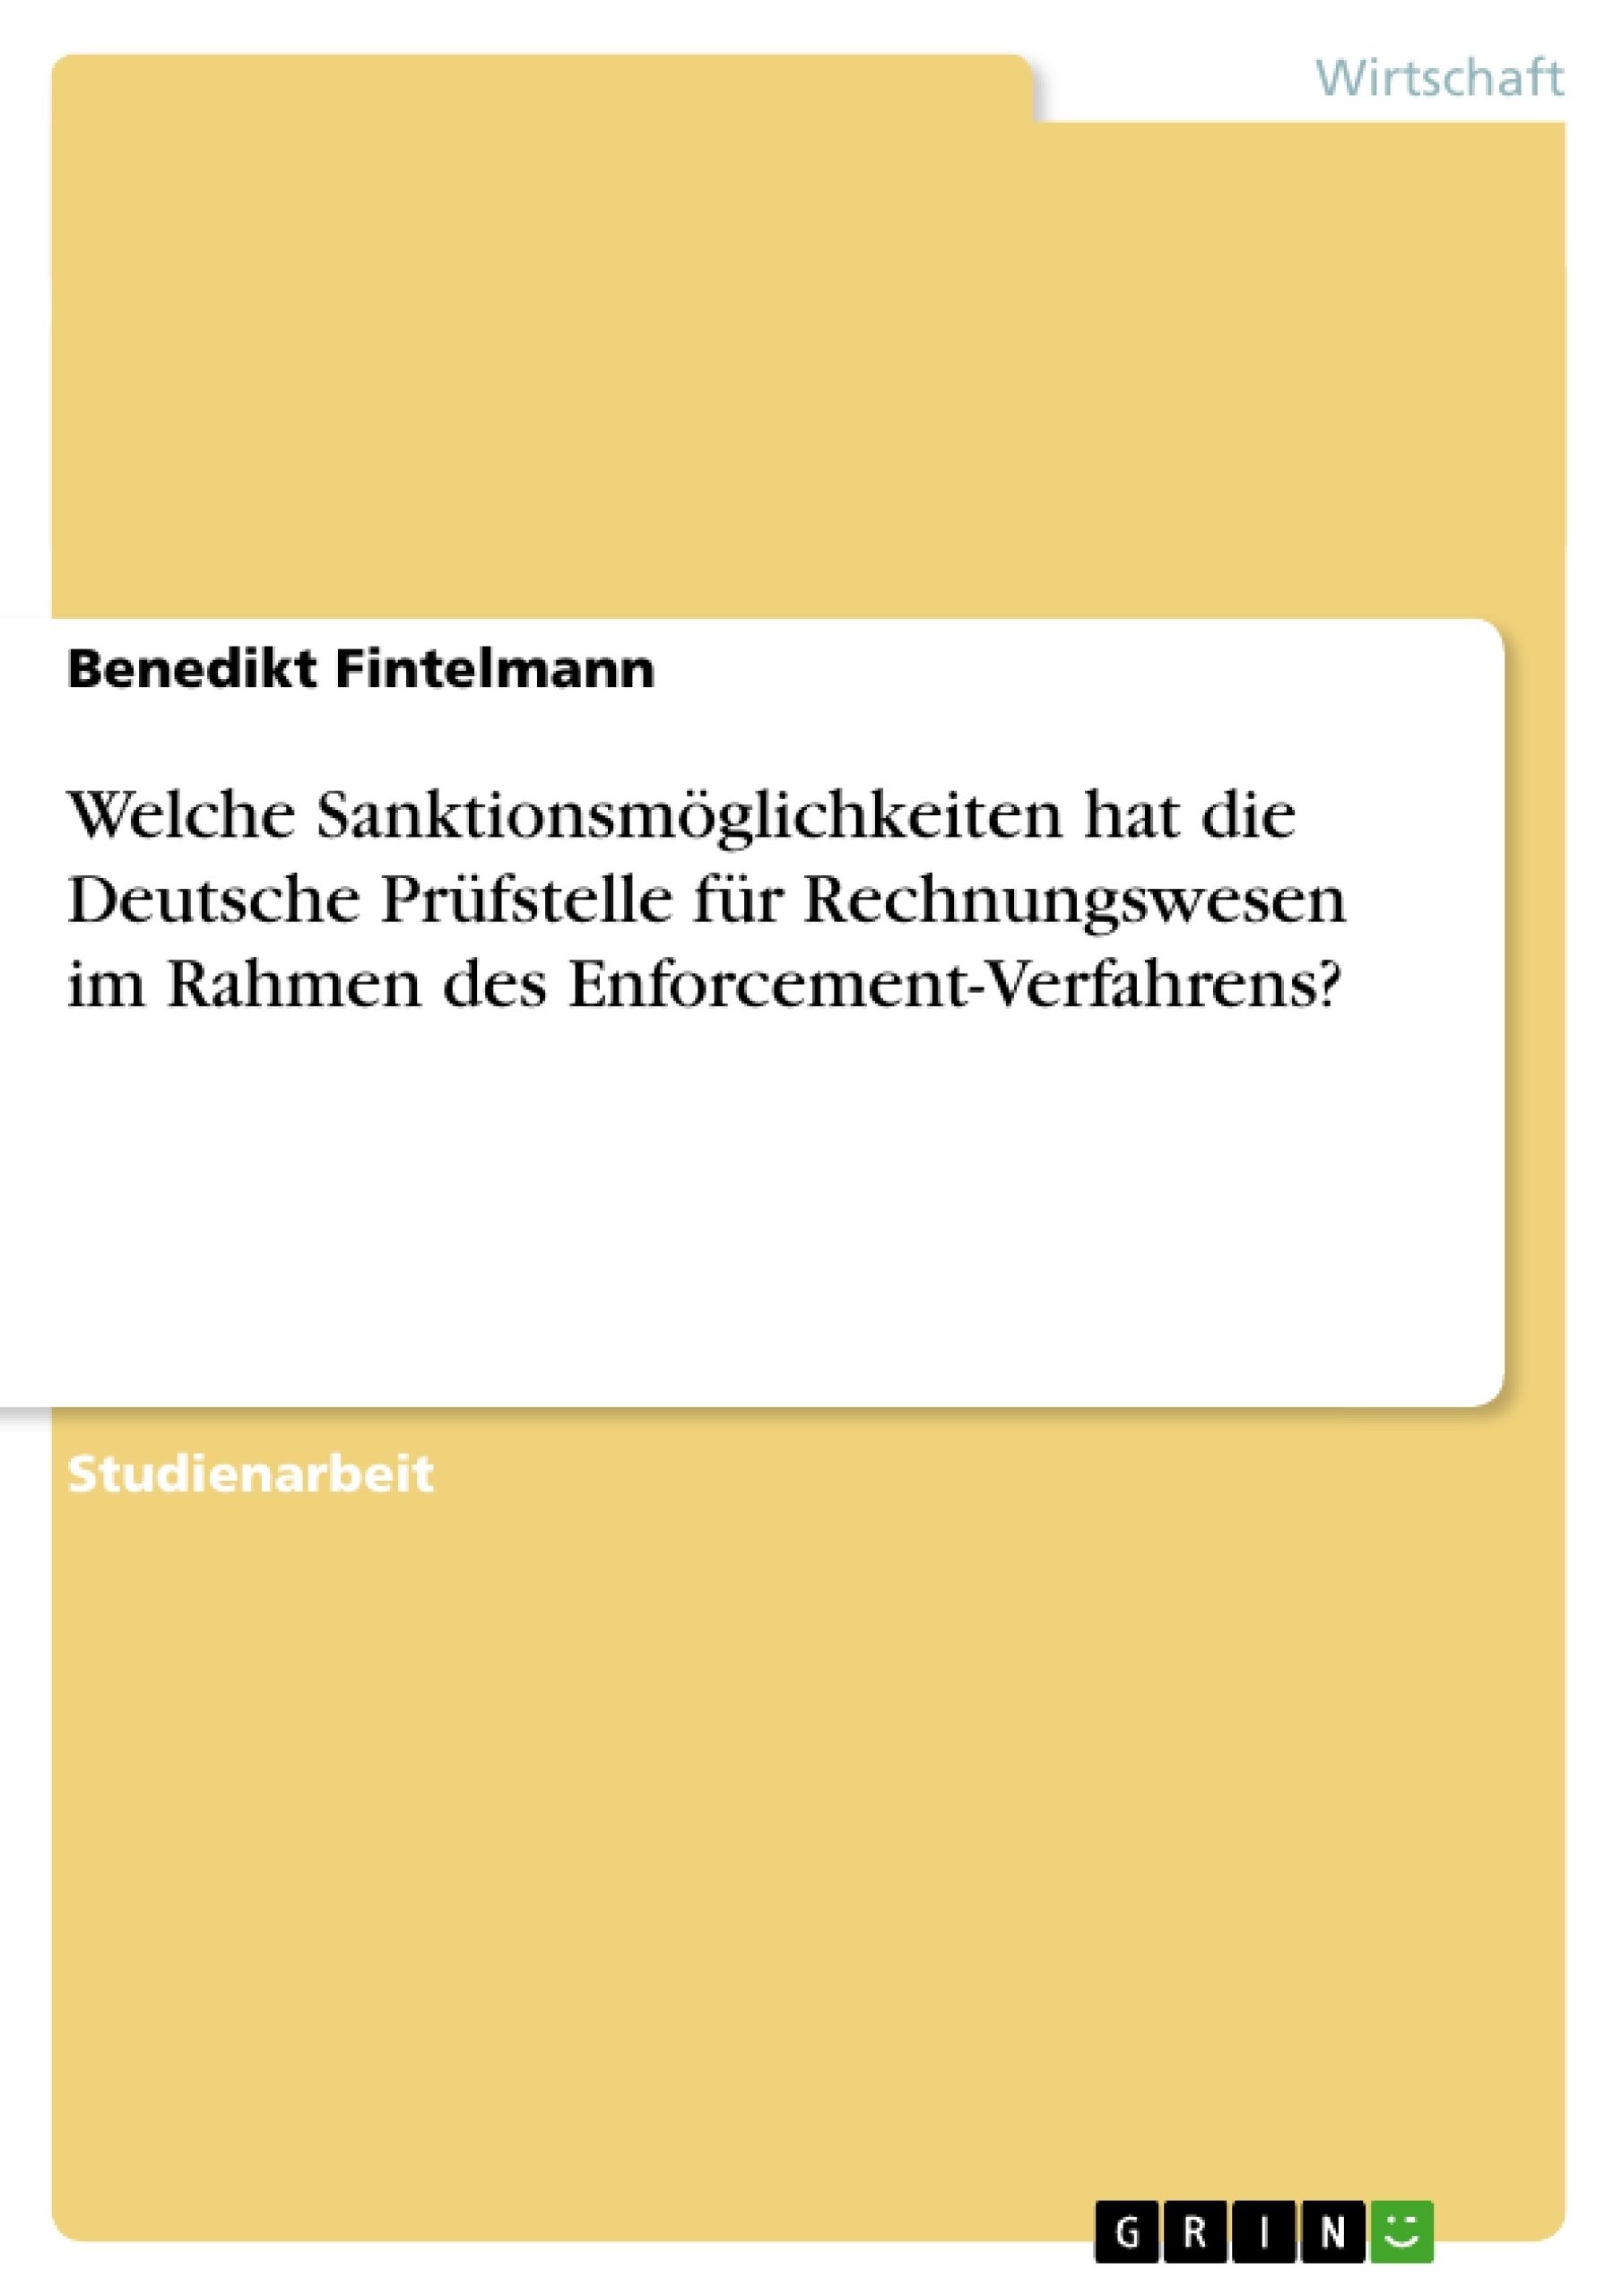 Titel: Welche Sanktionsmöglichkeiten hat die Deutsche Prüfstelle für Rechnungswesen im Rahmen des Enforcement-Verfahrens?